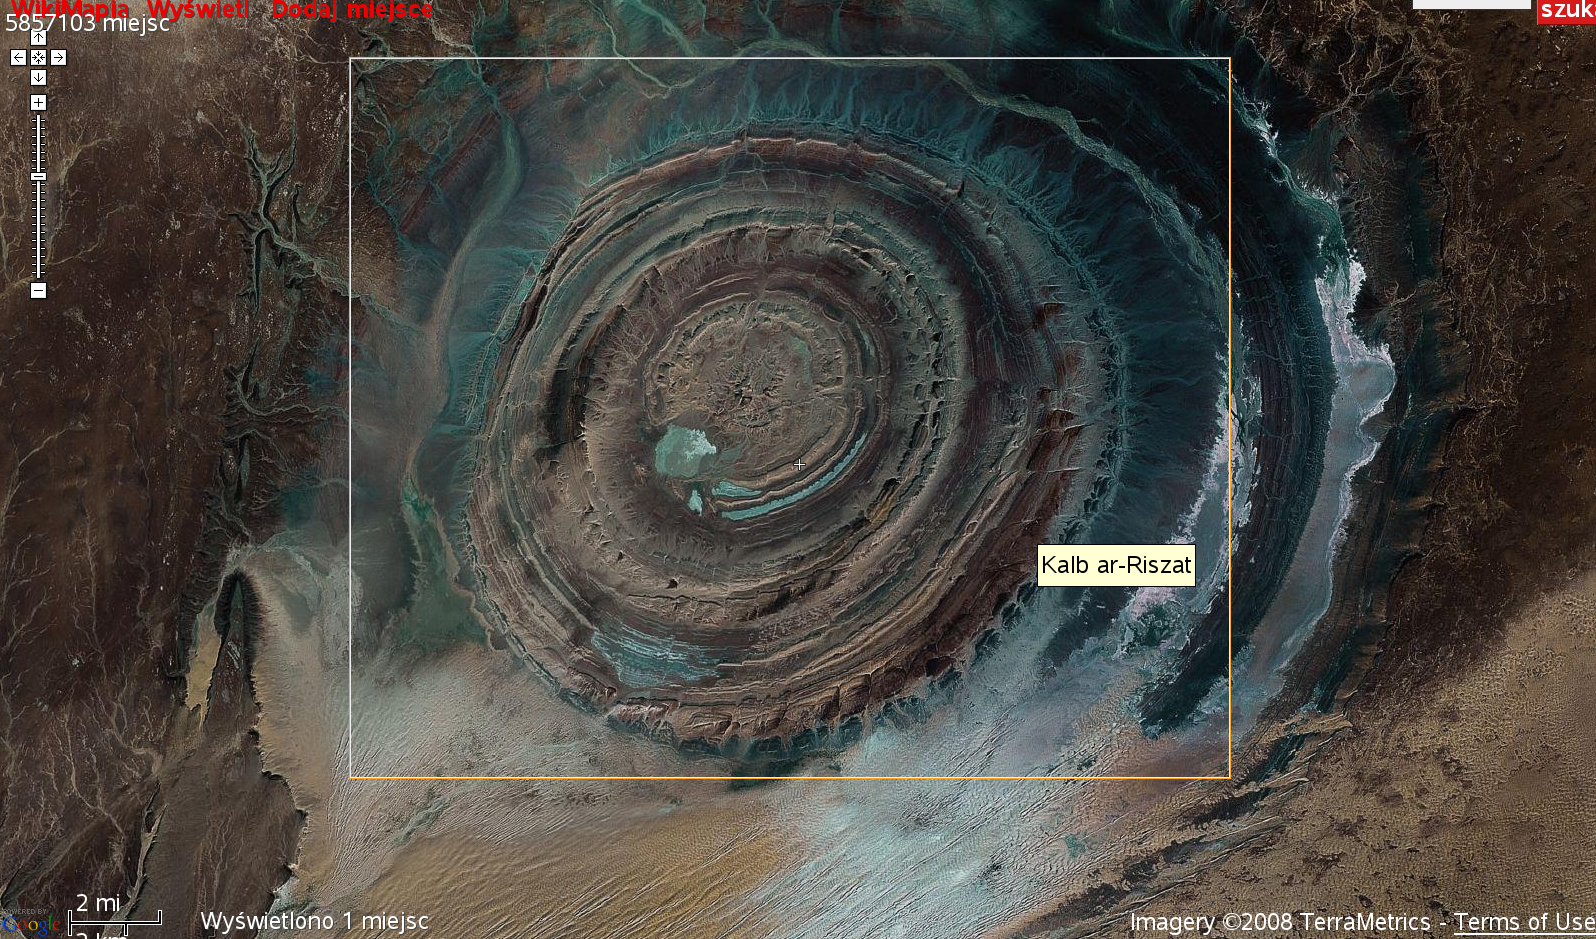 Сахара на глазок. Структура ришат в Мавритании. Структура ришат глаз Сахары. Ришат (глаз Сахары). Мавритания. Геологическое образование ришат сахара Мавритания.